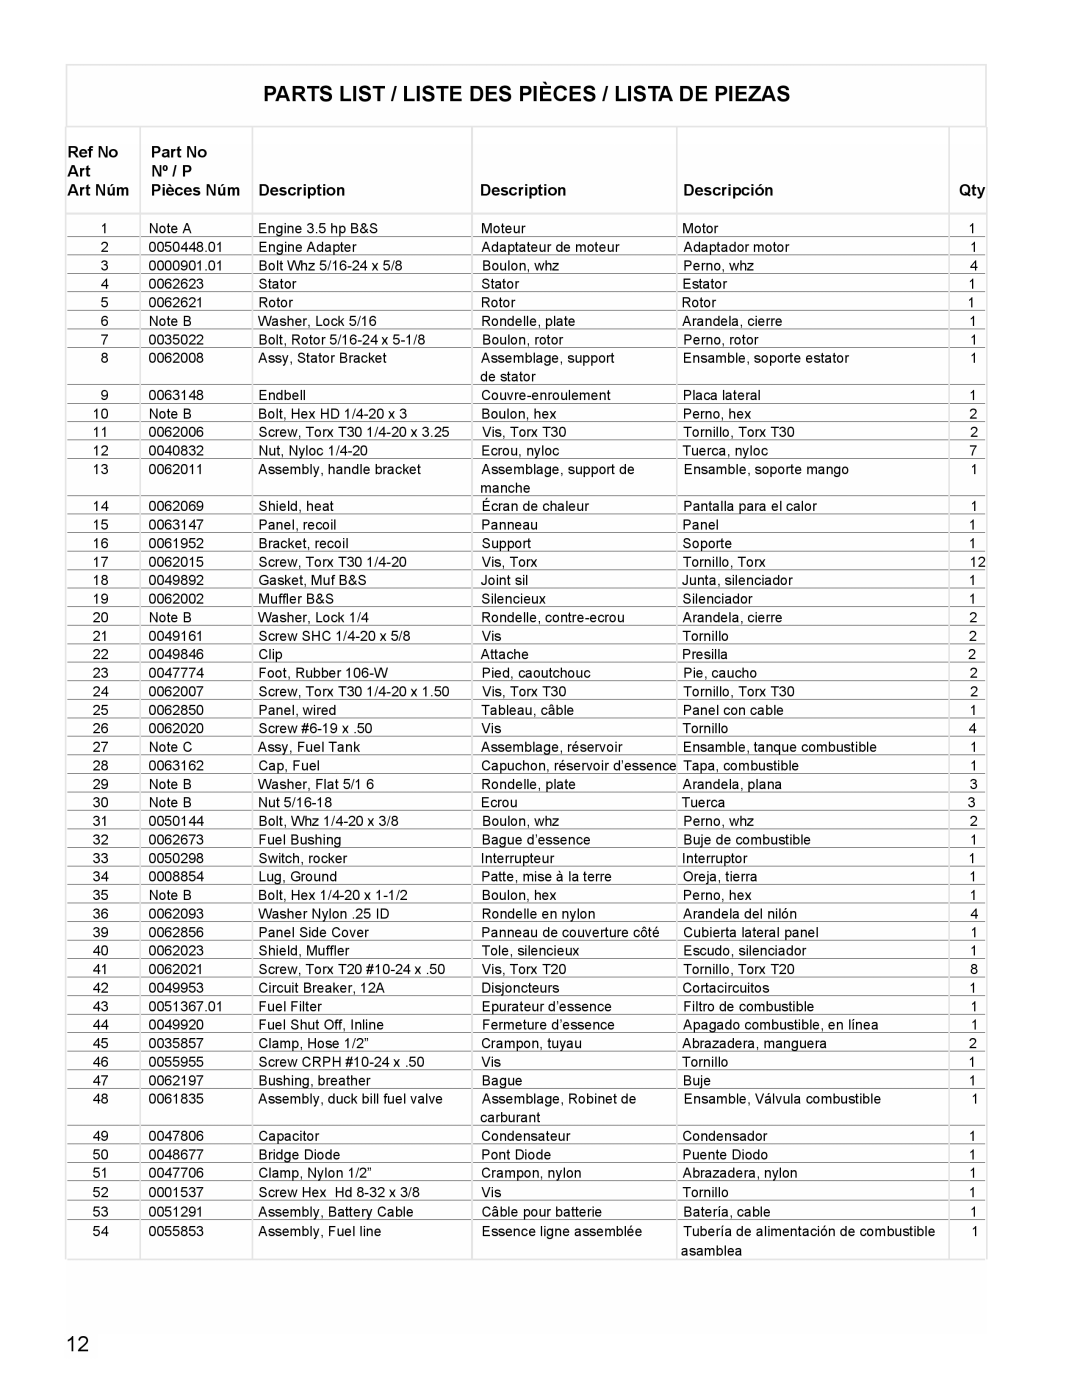 Powermate PMC401856 manual Parts List / Liste Des Pièces / Lista De Piezas 